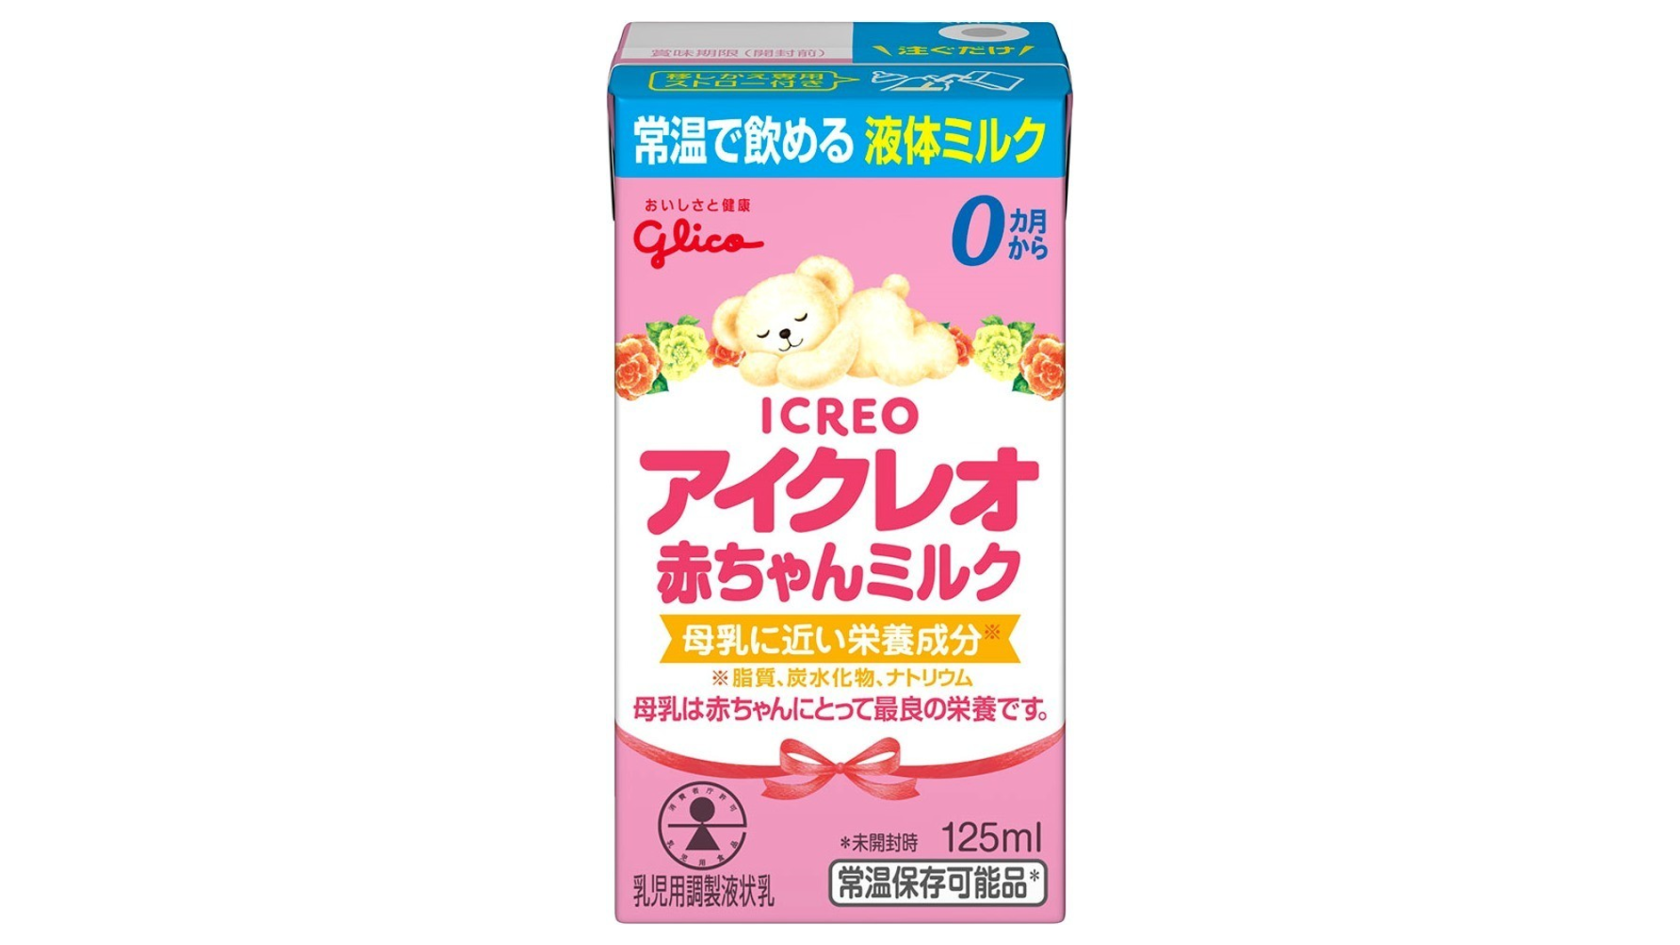 日本多胎支援協会の協力のもと 江崎グリコが多胎児家庭を支援 本日から1年間 液体ミルク を専用価格で 公式 江崎グリコ Glico